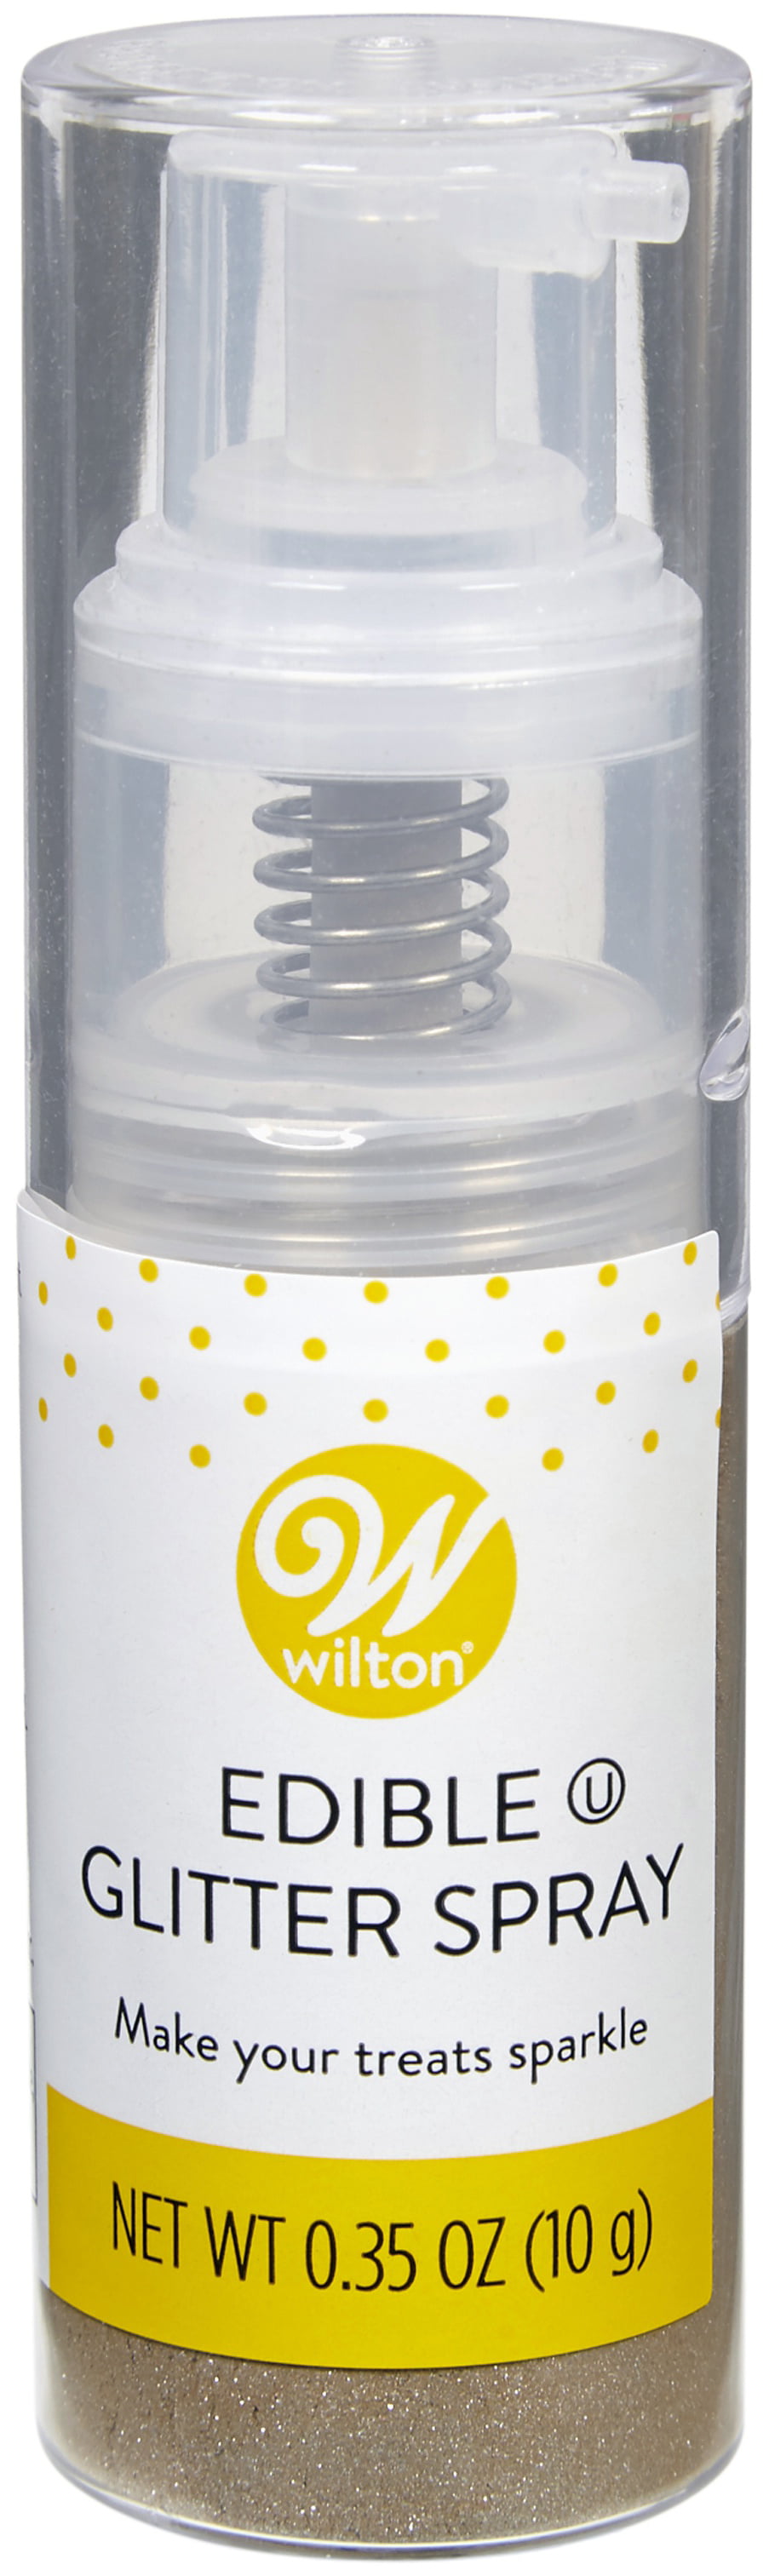 Wilton Rose Gold Edible Glitter Spray, 0.35 oz. 